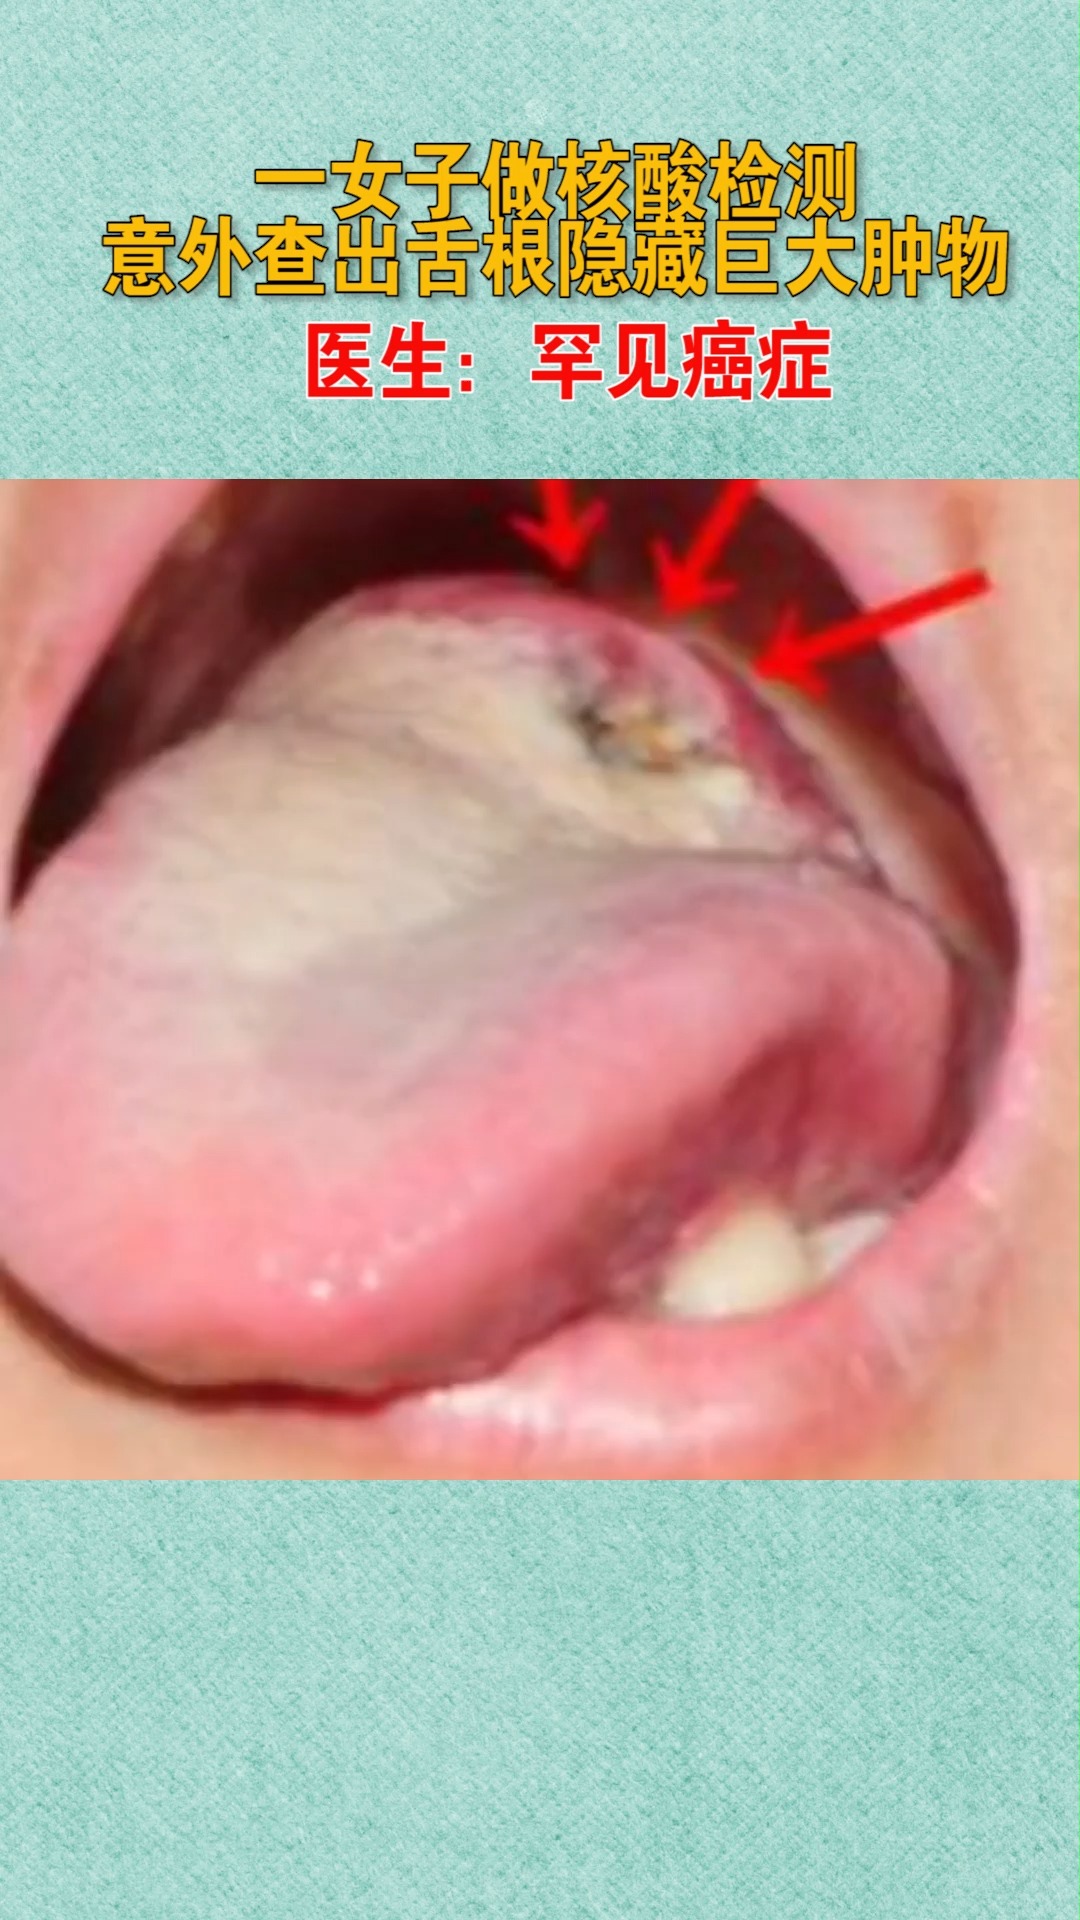 一女子做核酸检测意外查出舌根隐藏巨大肿物医生罕见癌症